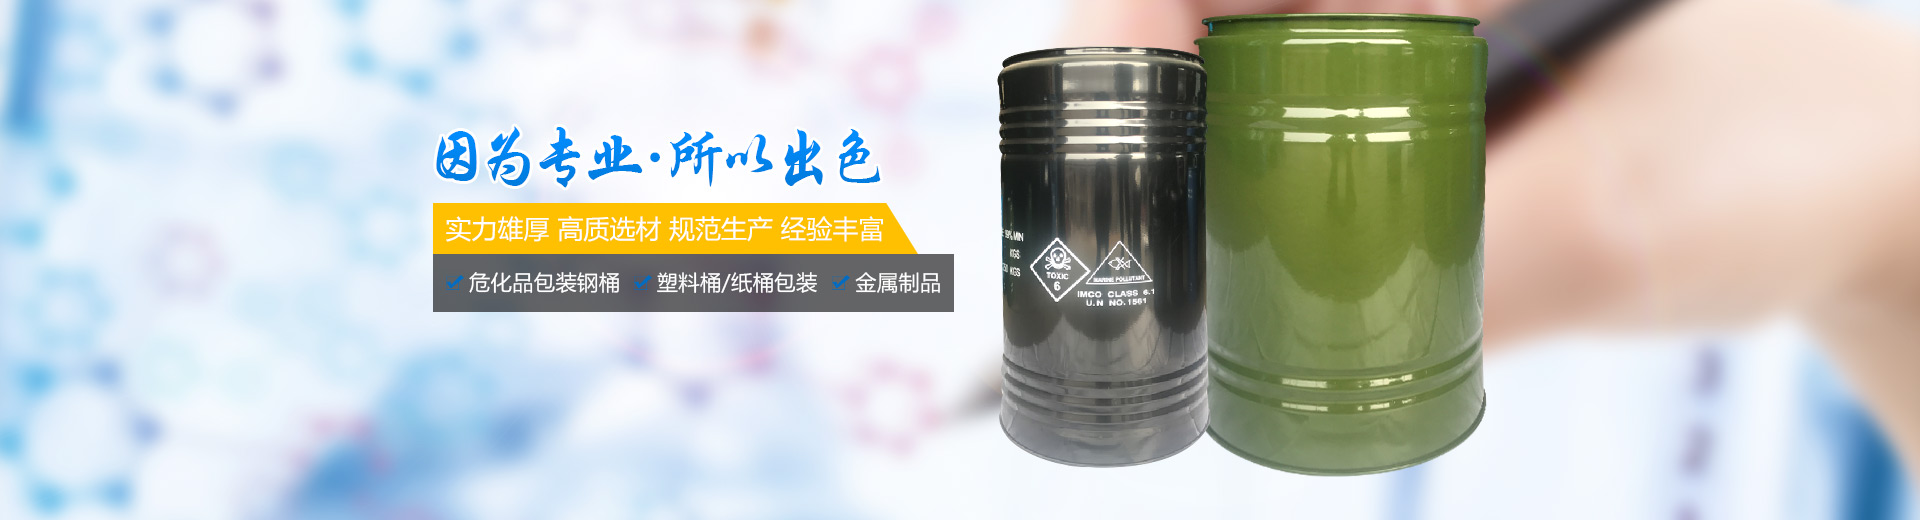 衡陽市迪偉包裝有限公司_危險品包裝鋼桶生產衡陽鋼桶生產危險化學品包裝